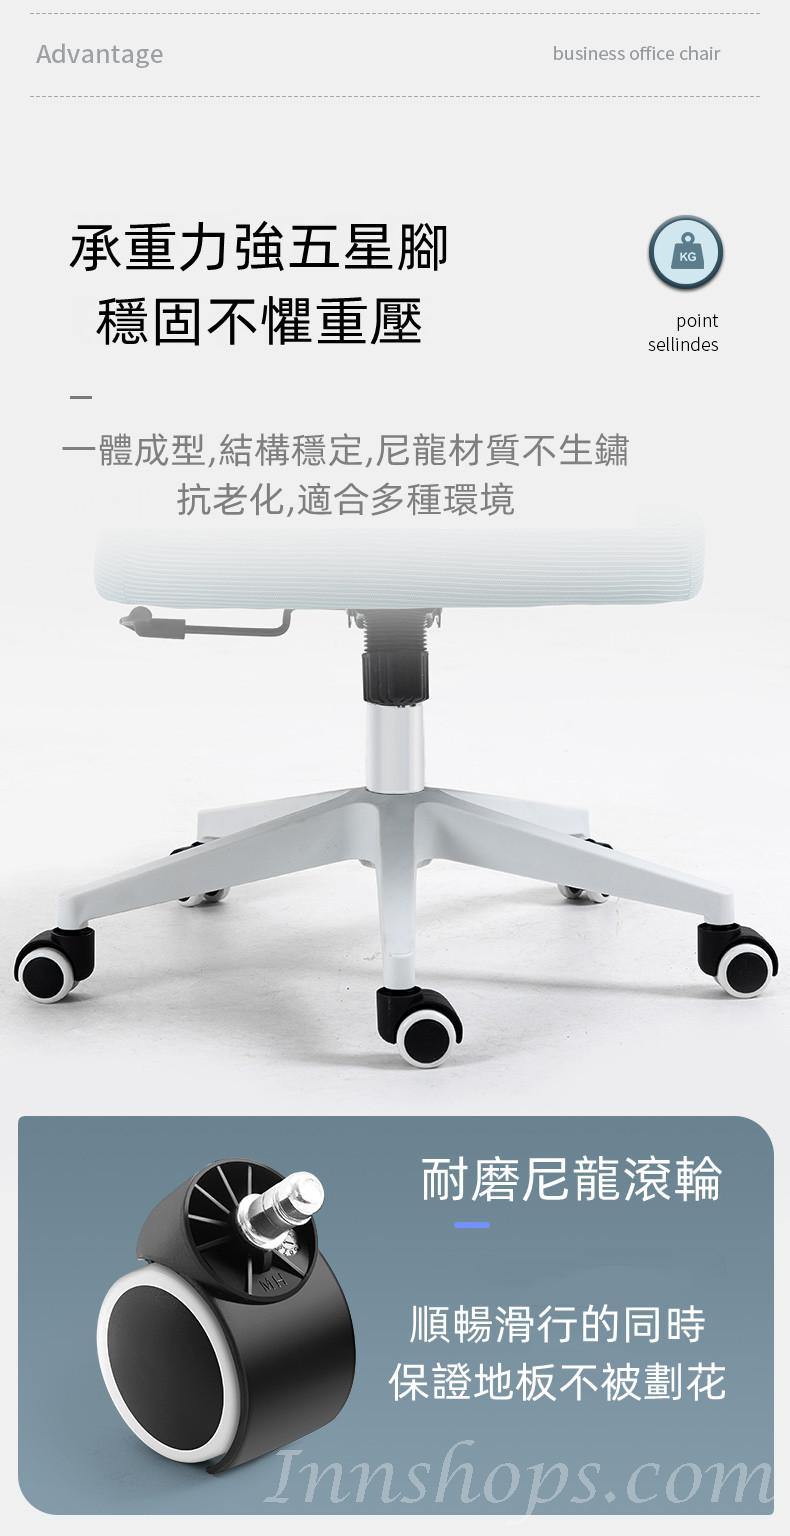 人體工學辦公椅 電腦椅 家用學生學習轉椅 宿舍靠背舒適久坐書桌椅子(IS8036)